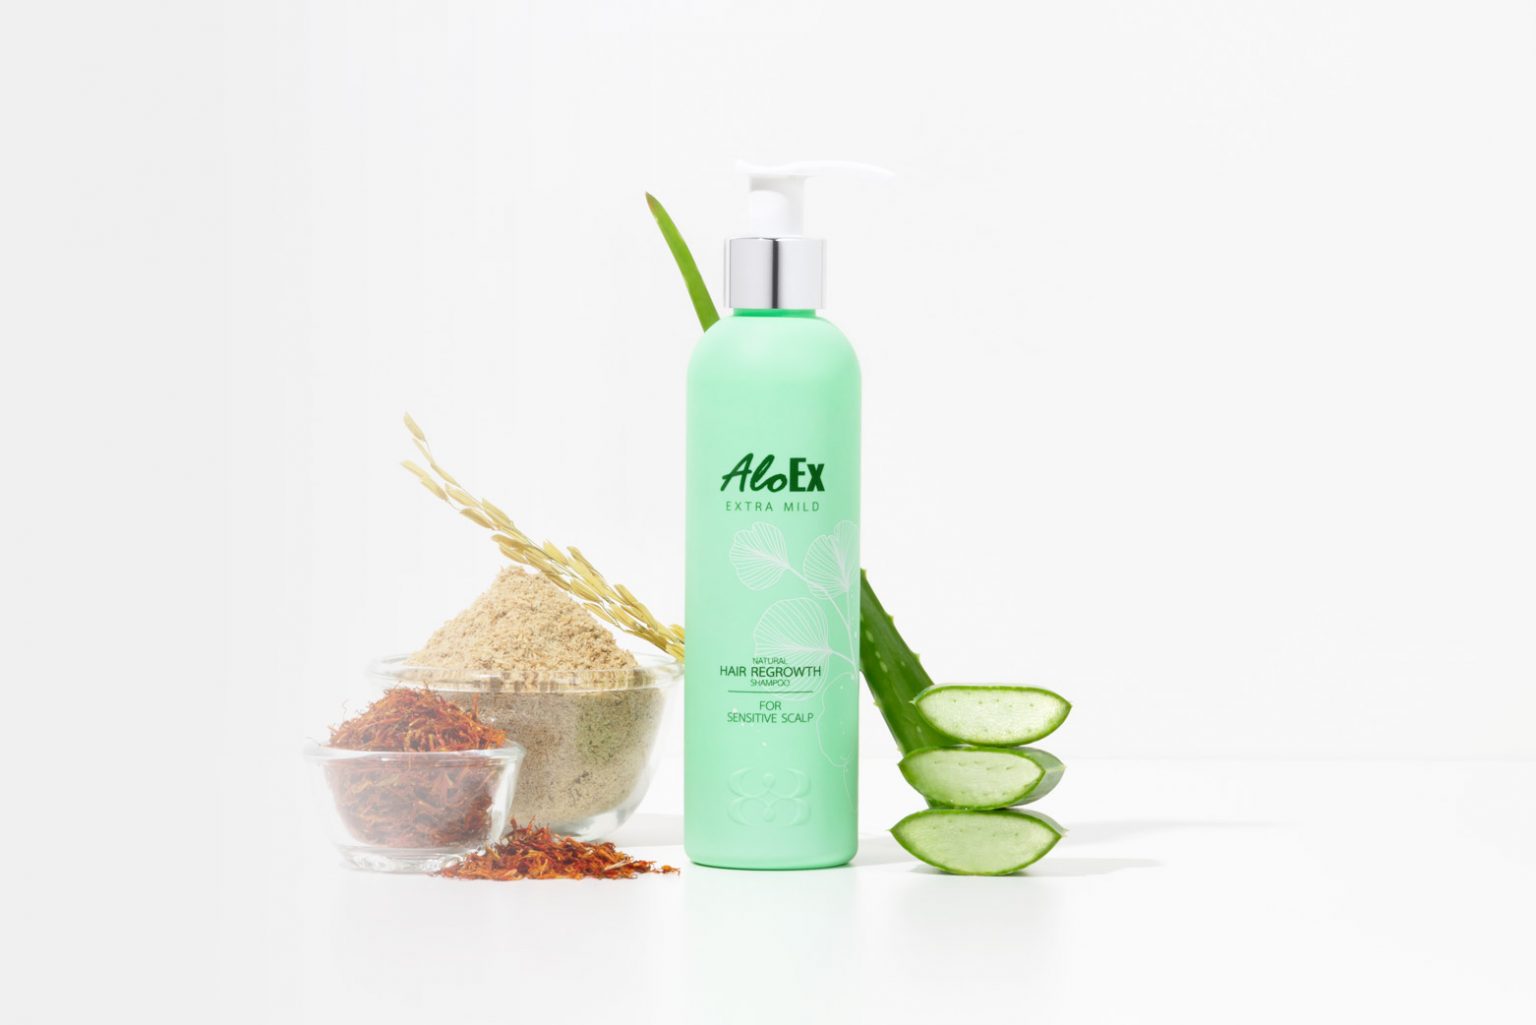 AloEx Extra Mild Shampoo